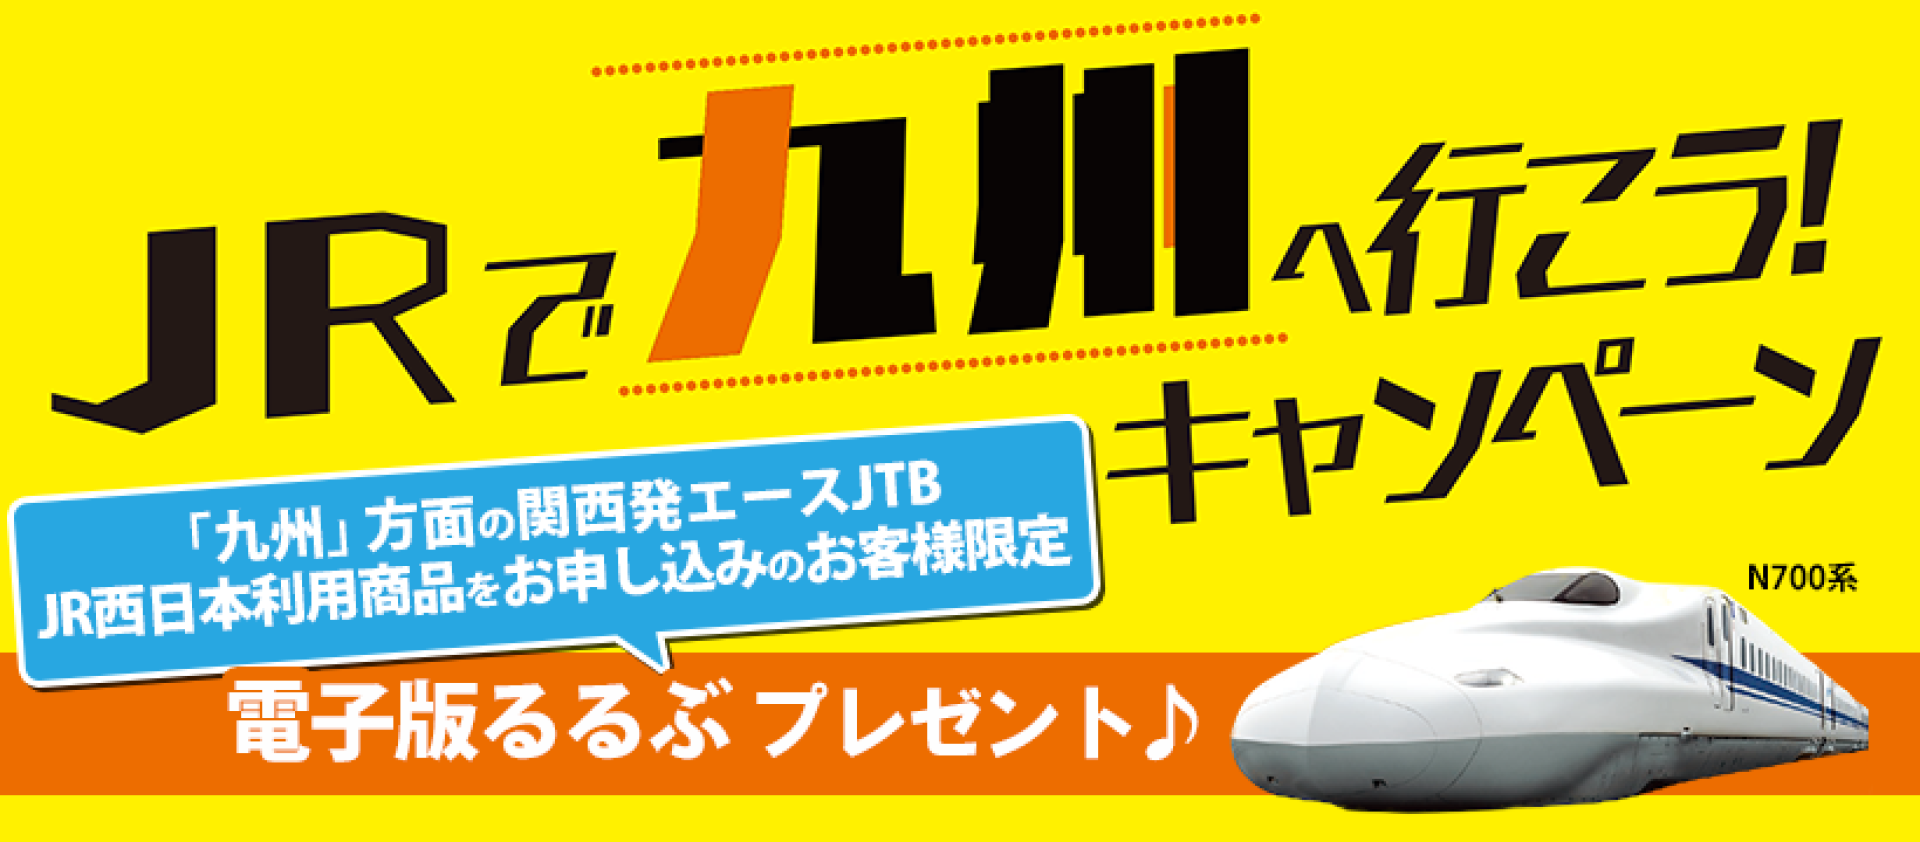 JRで九州へ行こう！キャンペーン ダウンロード専用ページ | JTBパブリッシングの出版案内